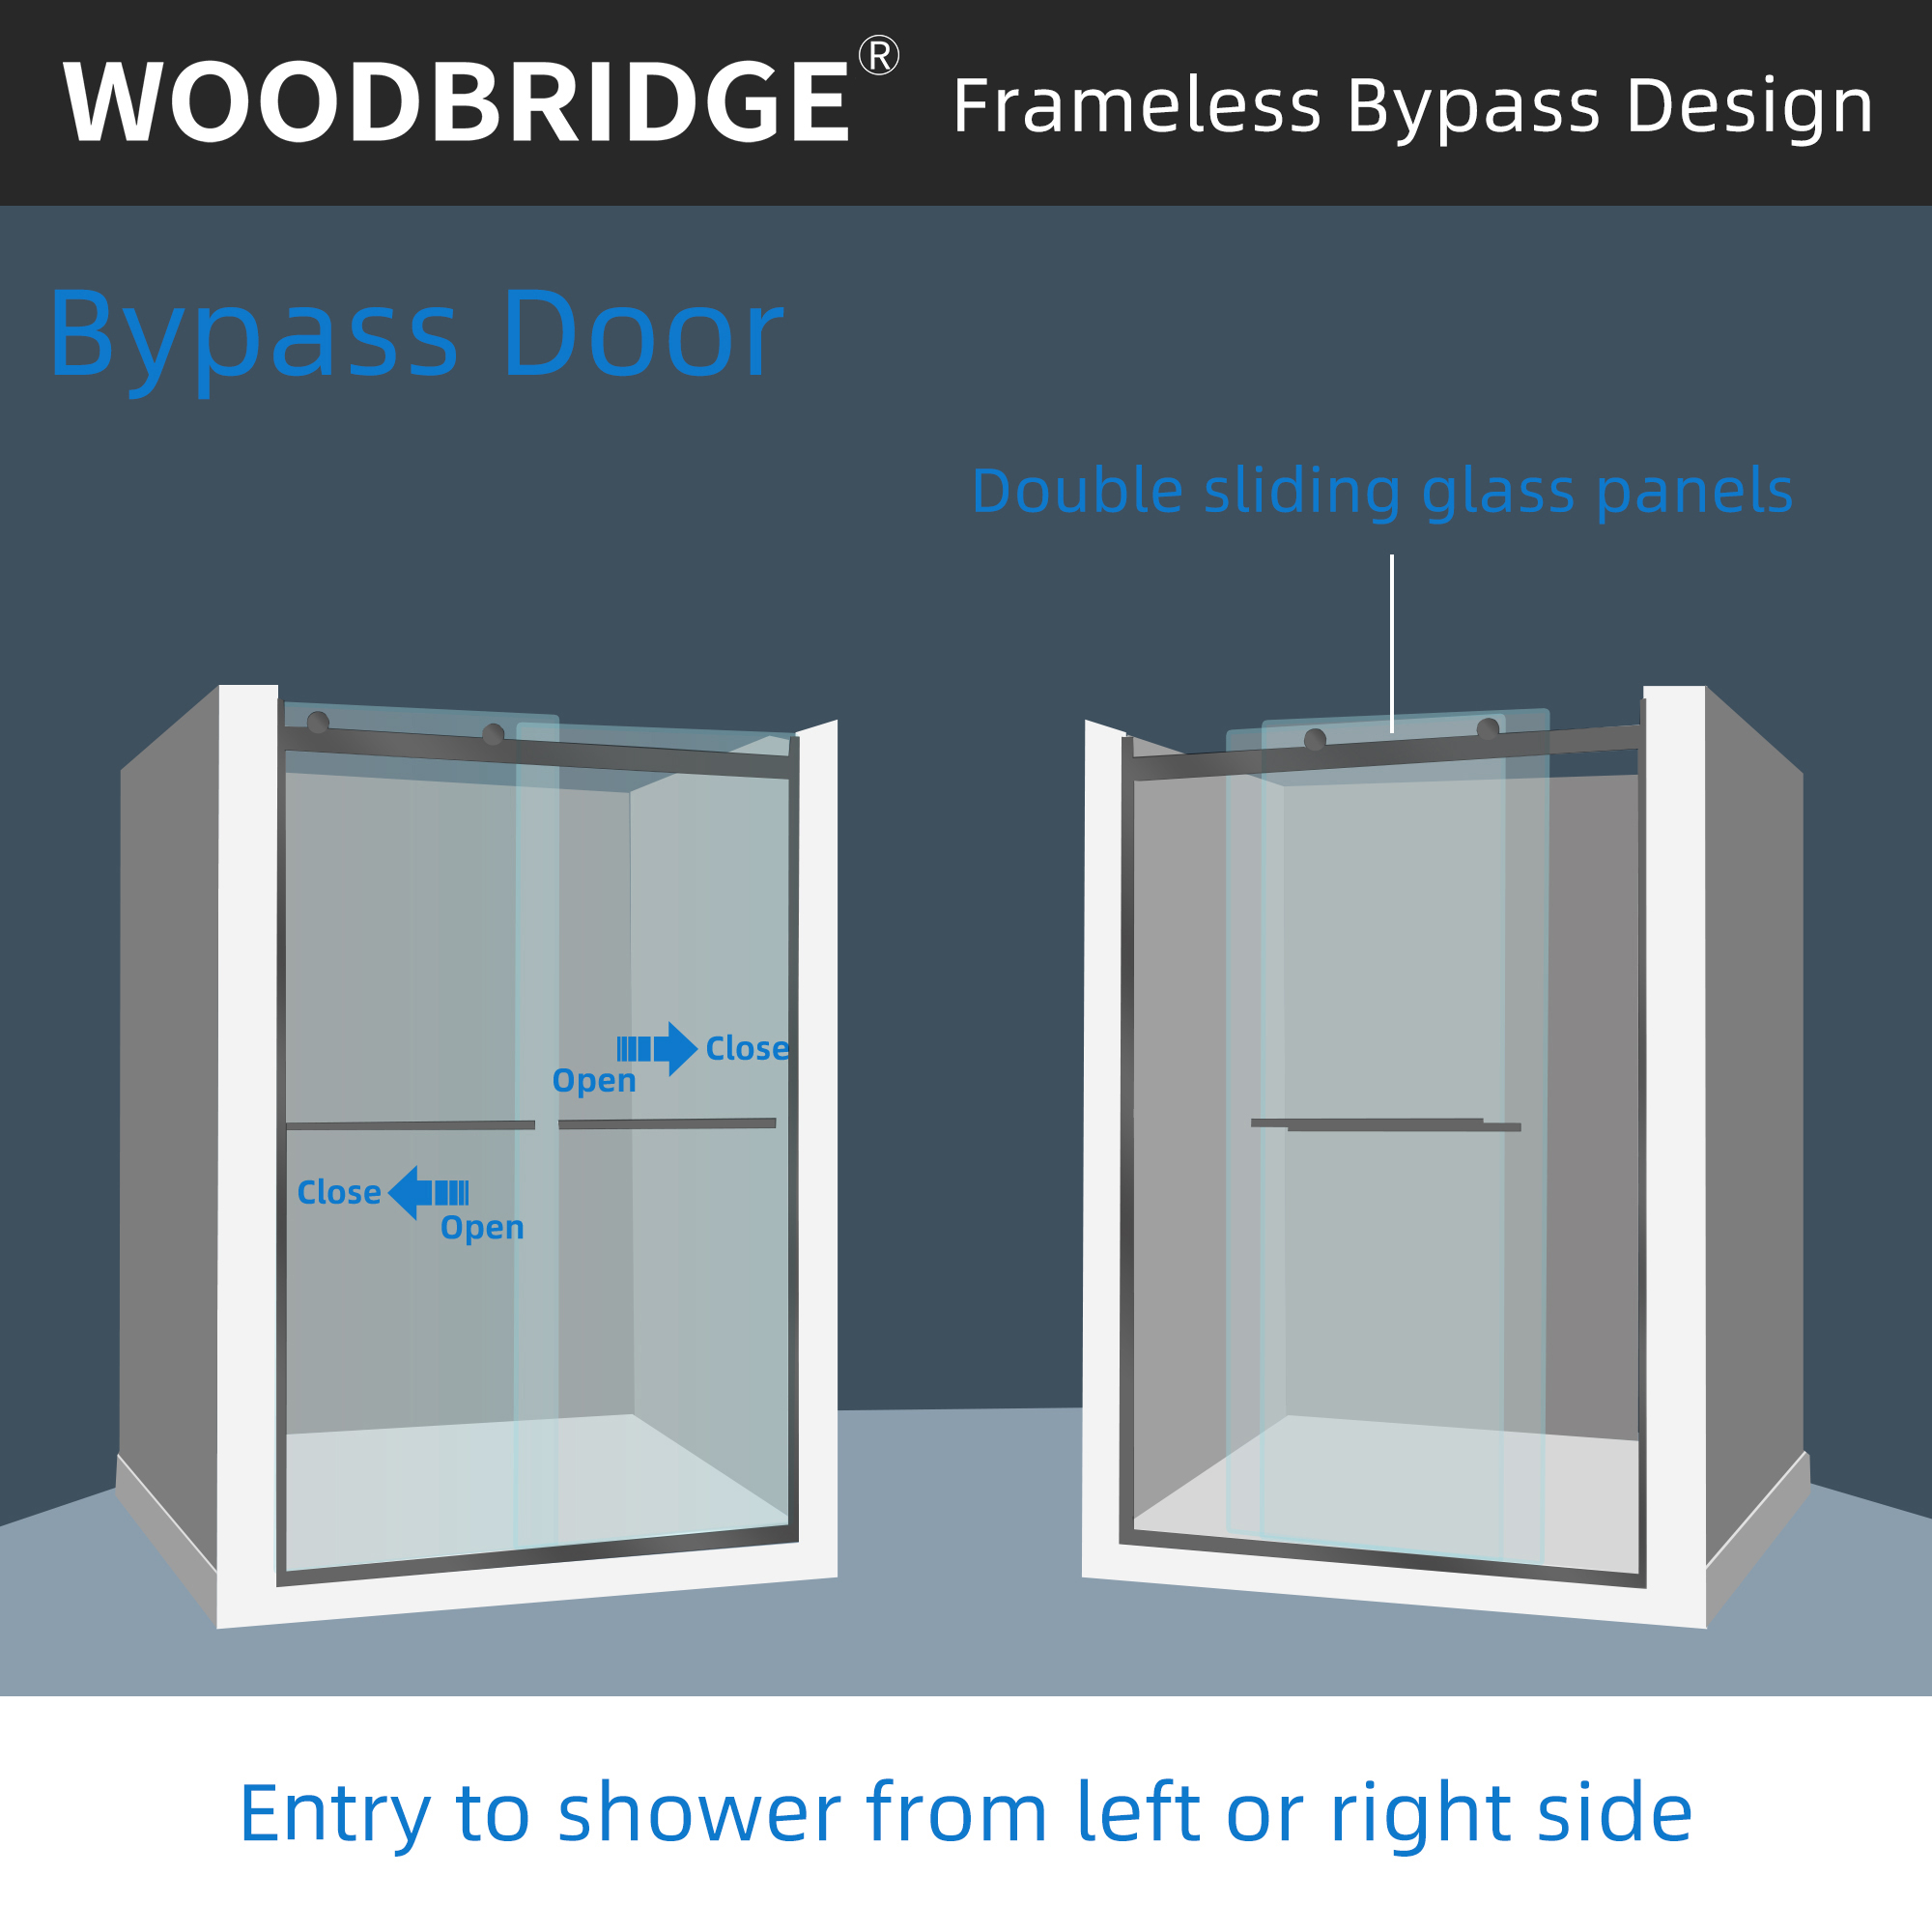  WOODBRIDGE Frameless Bathtub Shower Doors 46-48